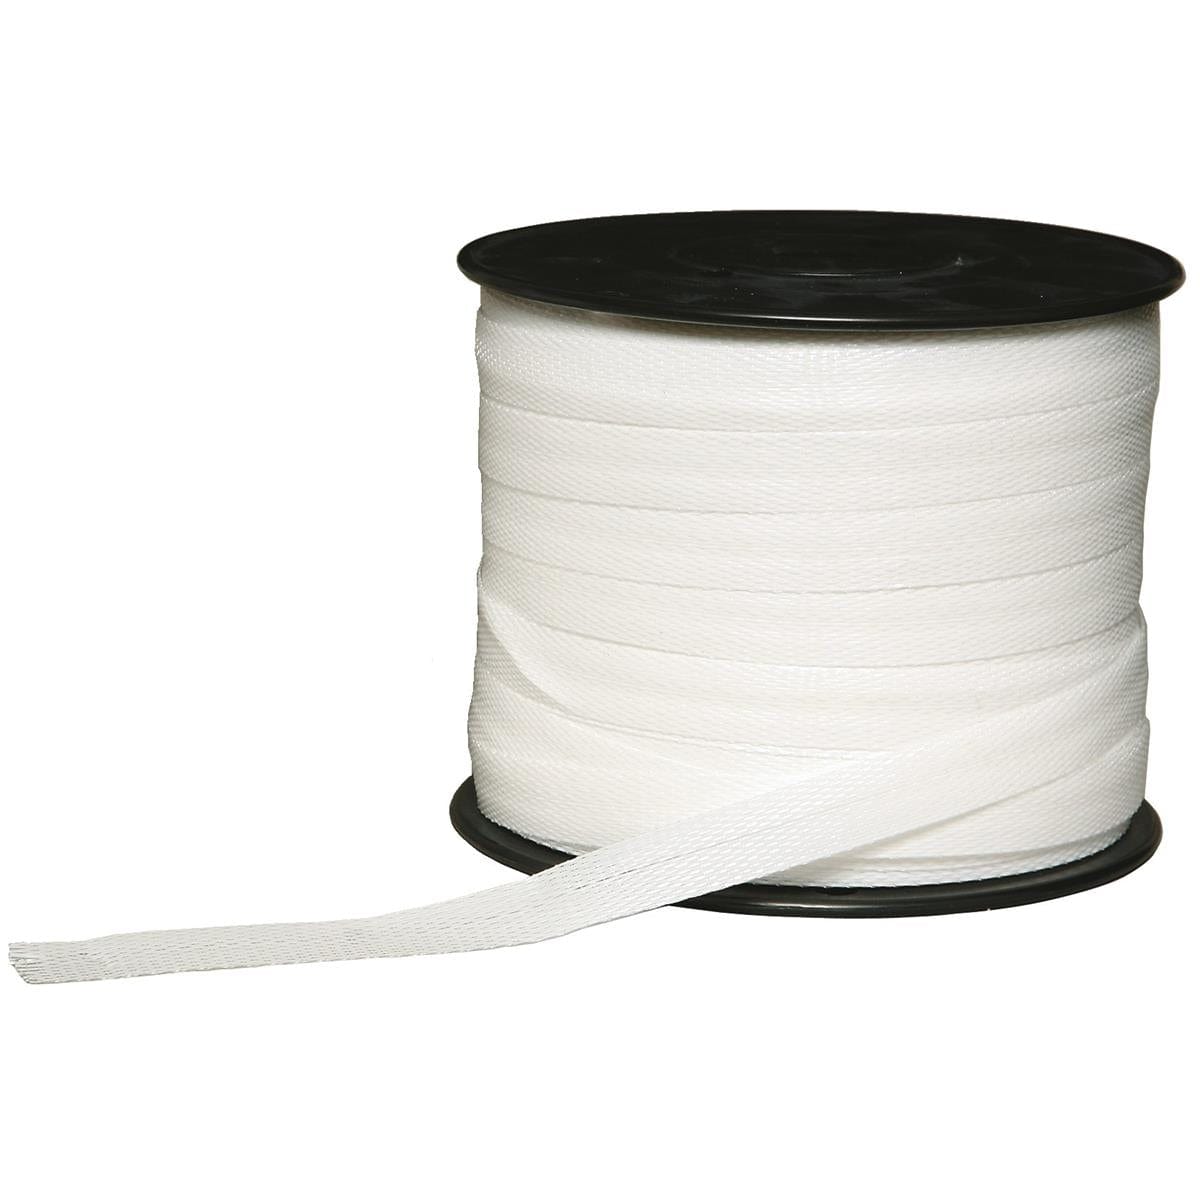 Replacement White Deer Ribbon for PLOTSAVER Barrier Kit